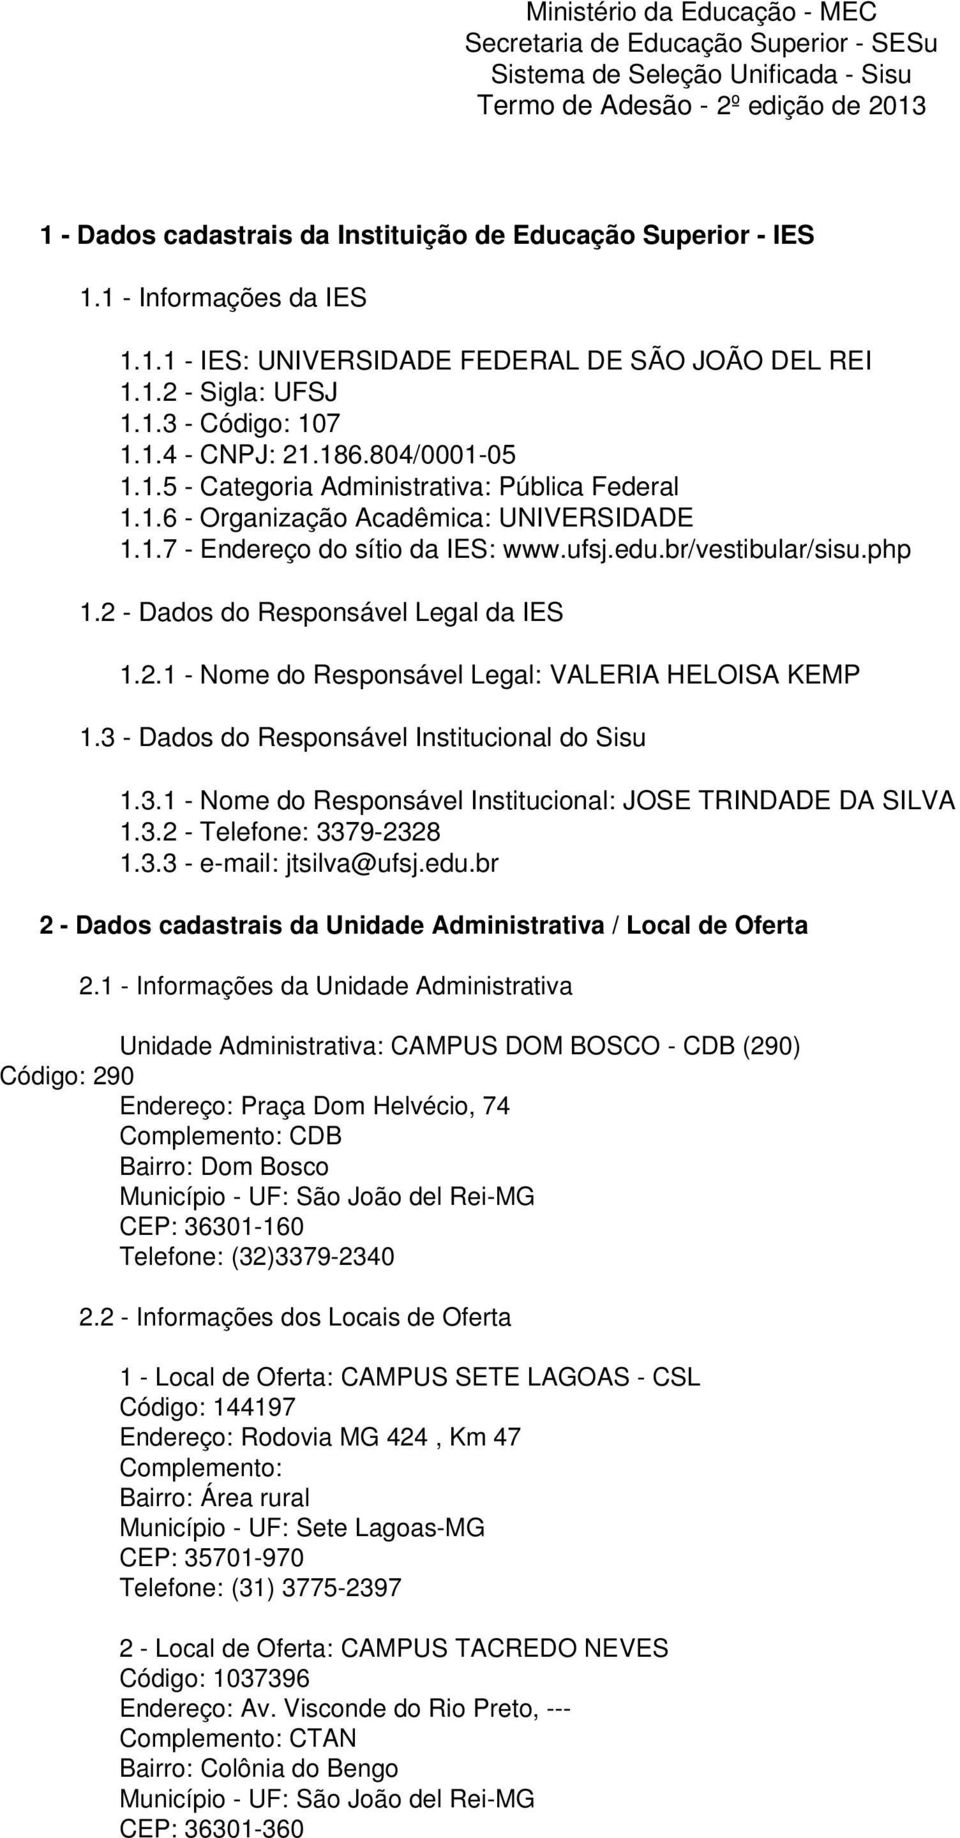 1.6 - Organização Acadêmica: UNIVERSIDADE 1.1.7 - Endereço do sítio da IES: www.ufsj.edu.br/vestibular/sisu.php 1.2 - Dados do Responsável Legal da IES 1.2.1 - Nome do Responsável Legal: VALERIA HELOISA KEMP 1.